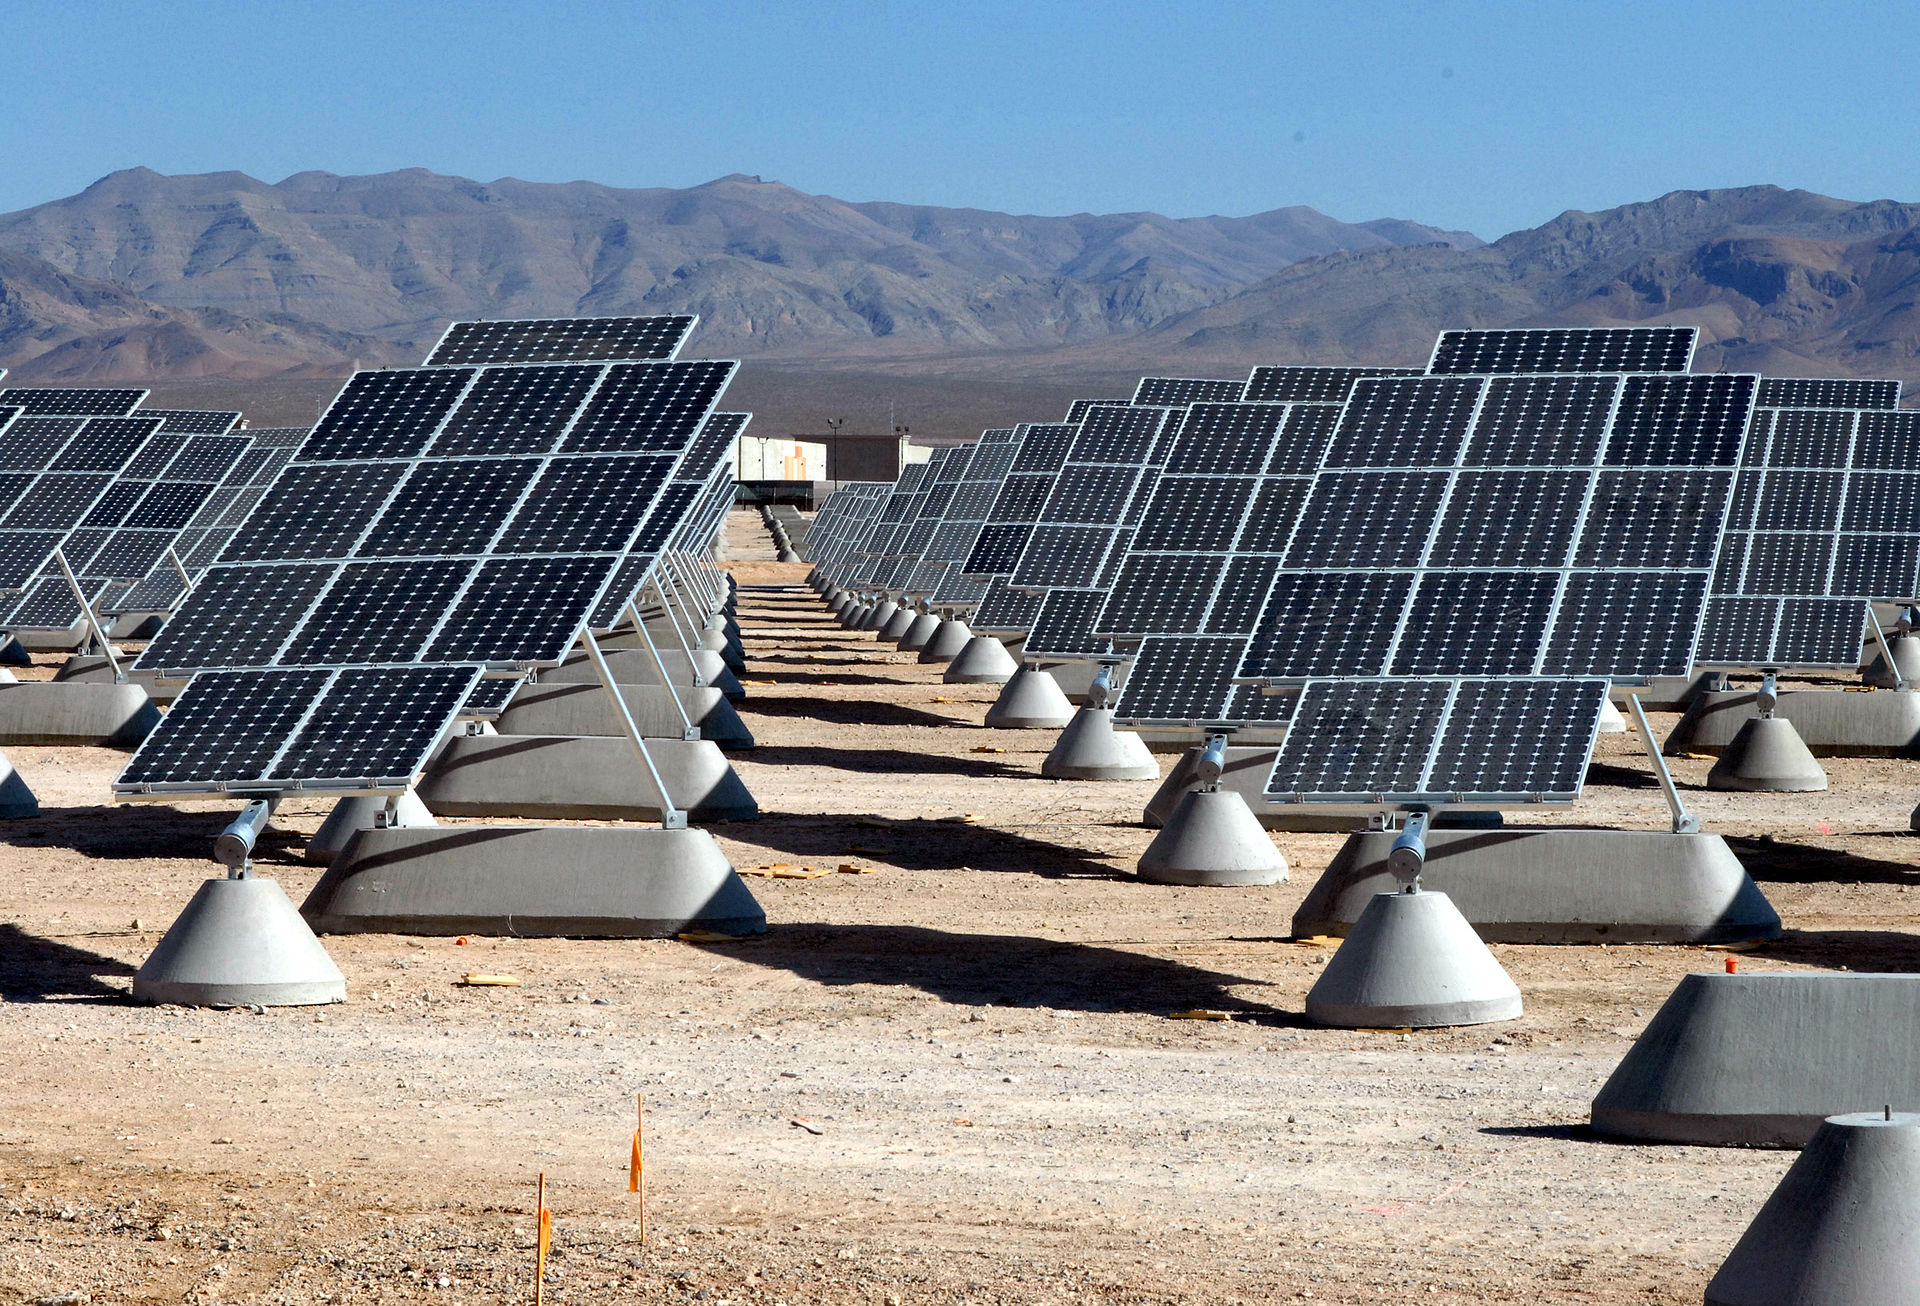 Foto de varios paneles solares de una central solar fotovoltaica.